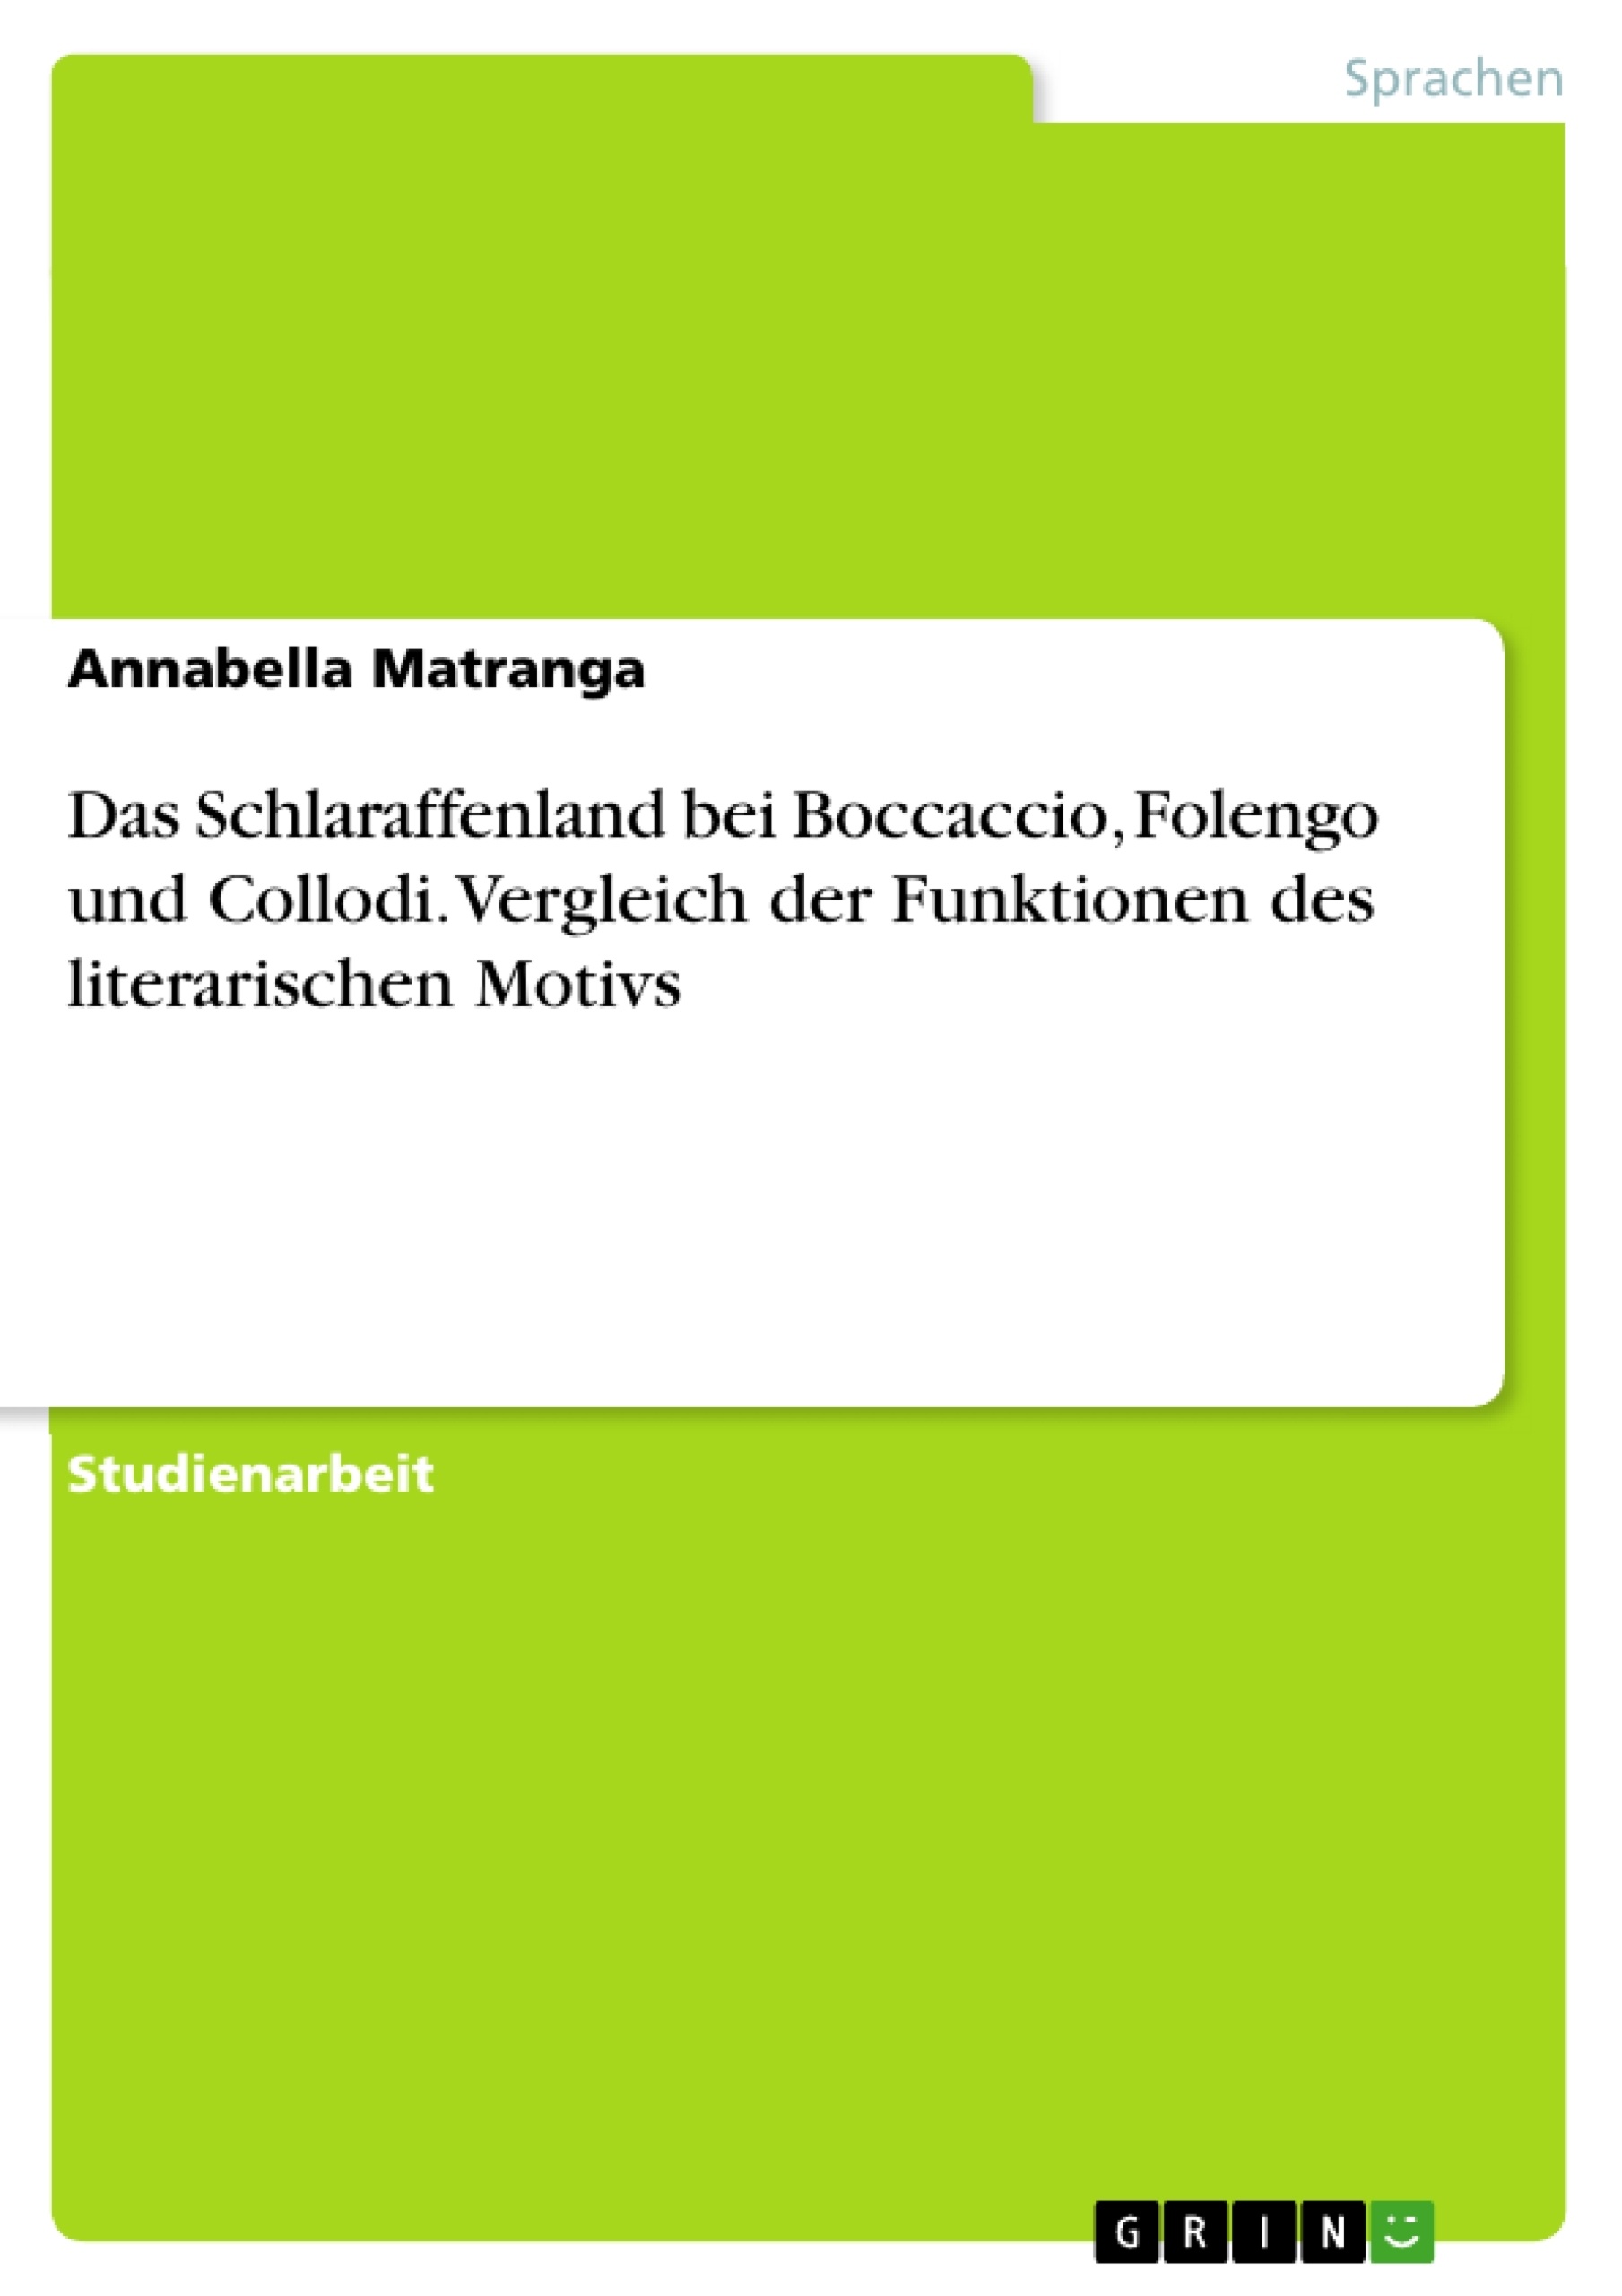 Title: Das Schlaraffenland bei Boccaccio, Folengo und Collodi. Vergleich der Funktionen des literarischen Motivs